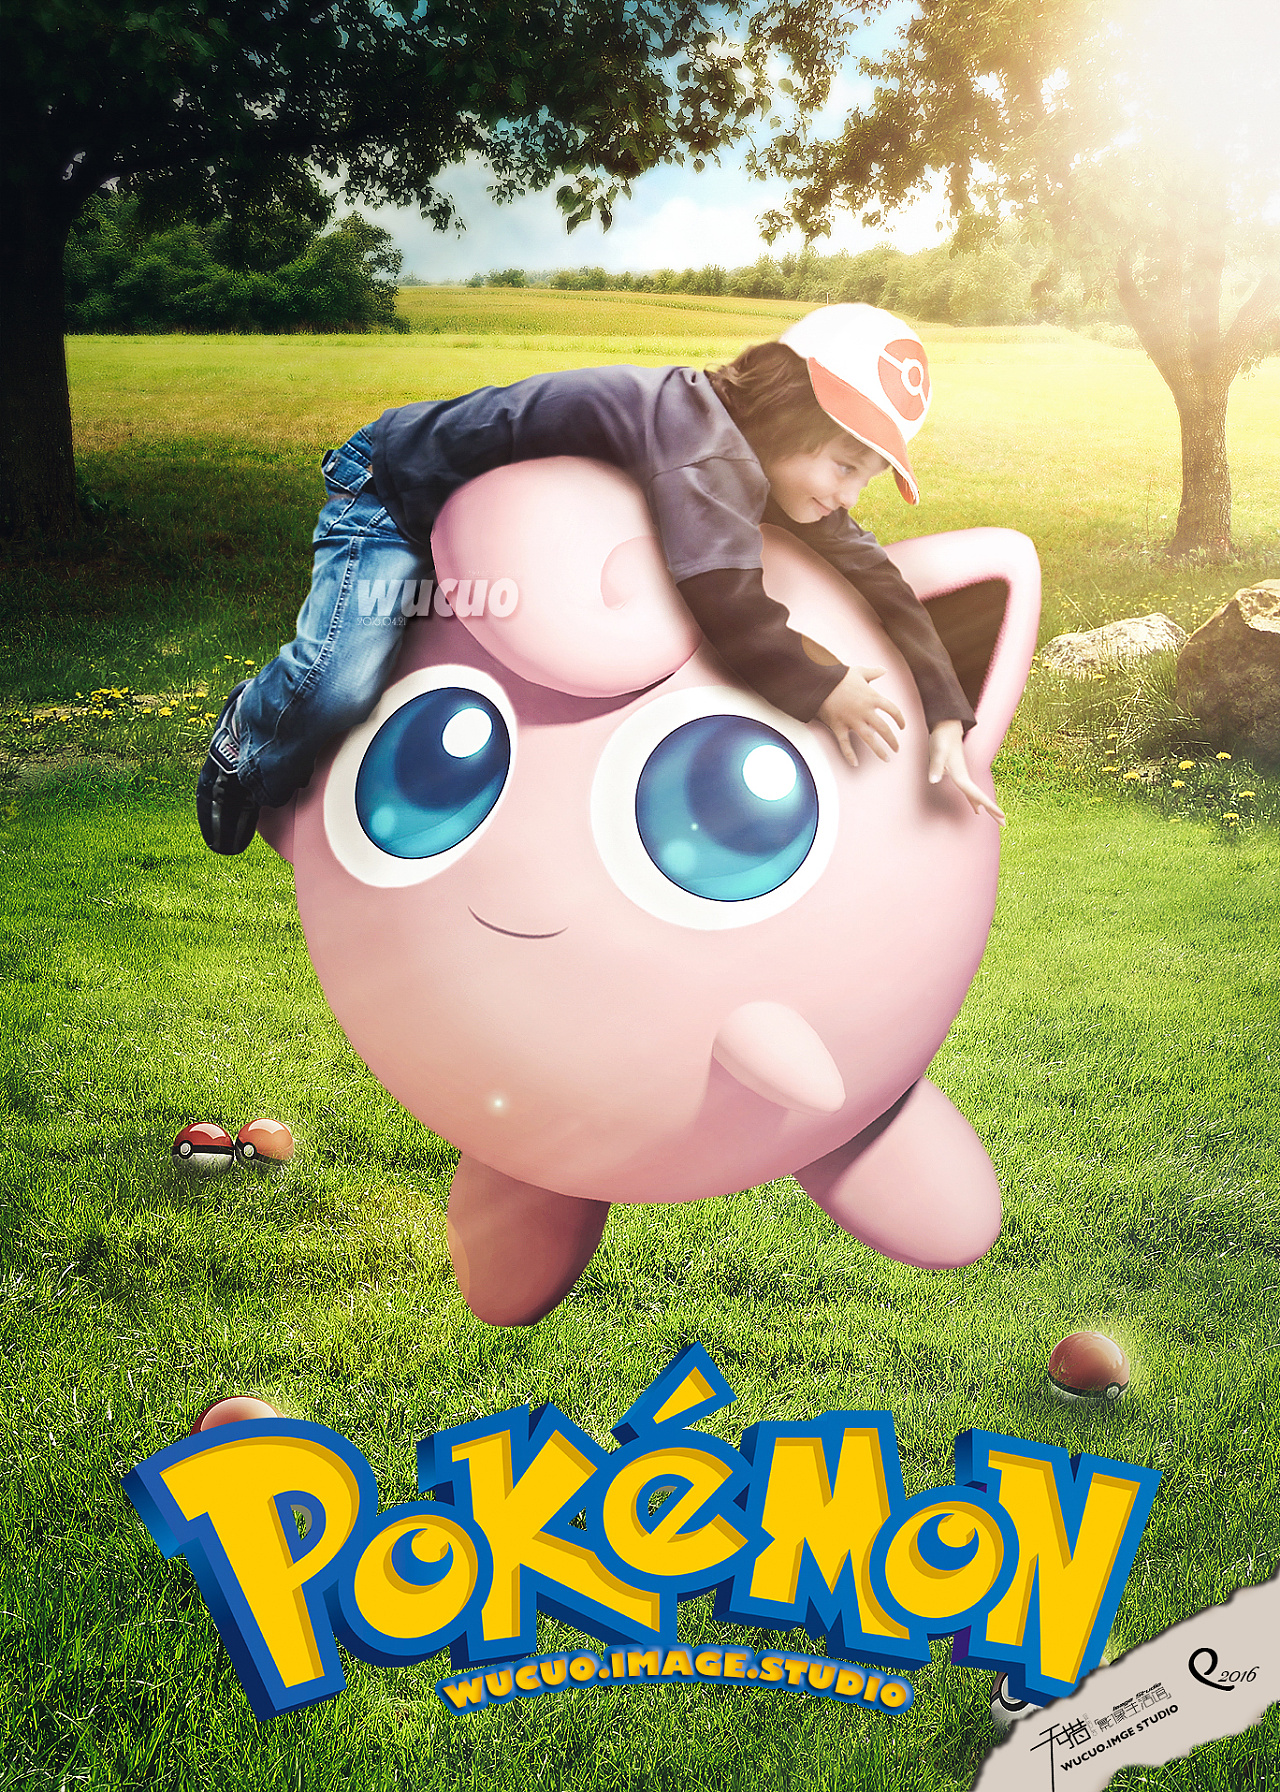 [照片合成] Pokemon go 宠物小精灵 合成海报